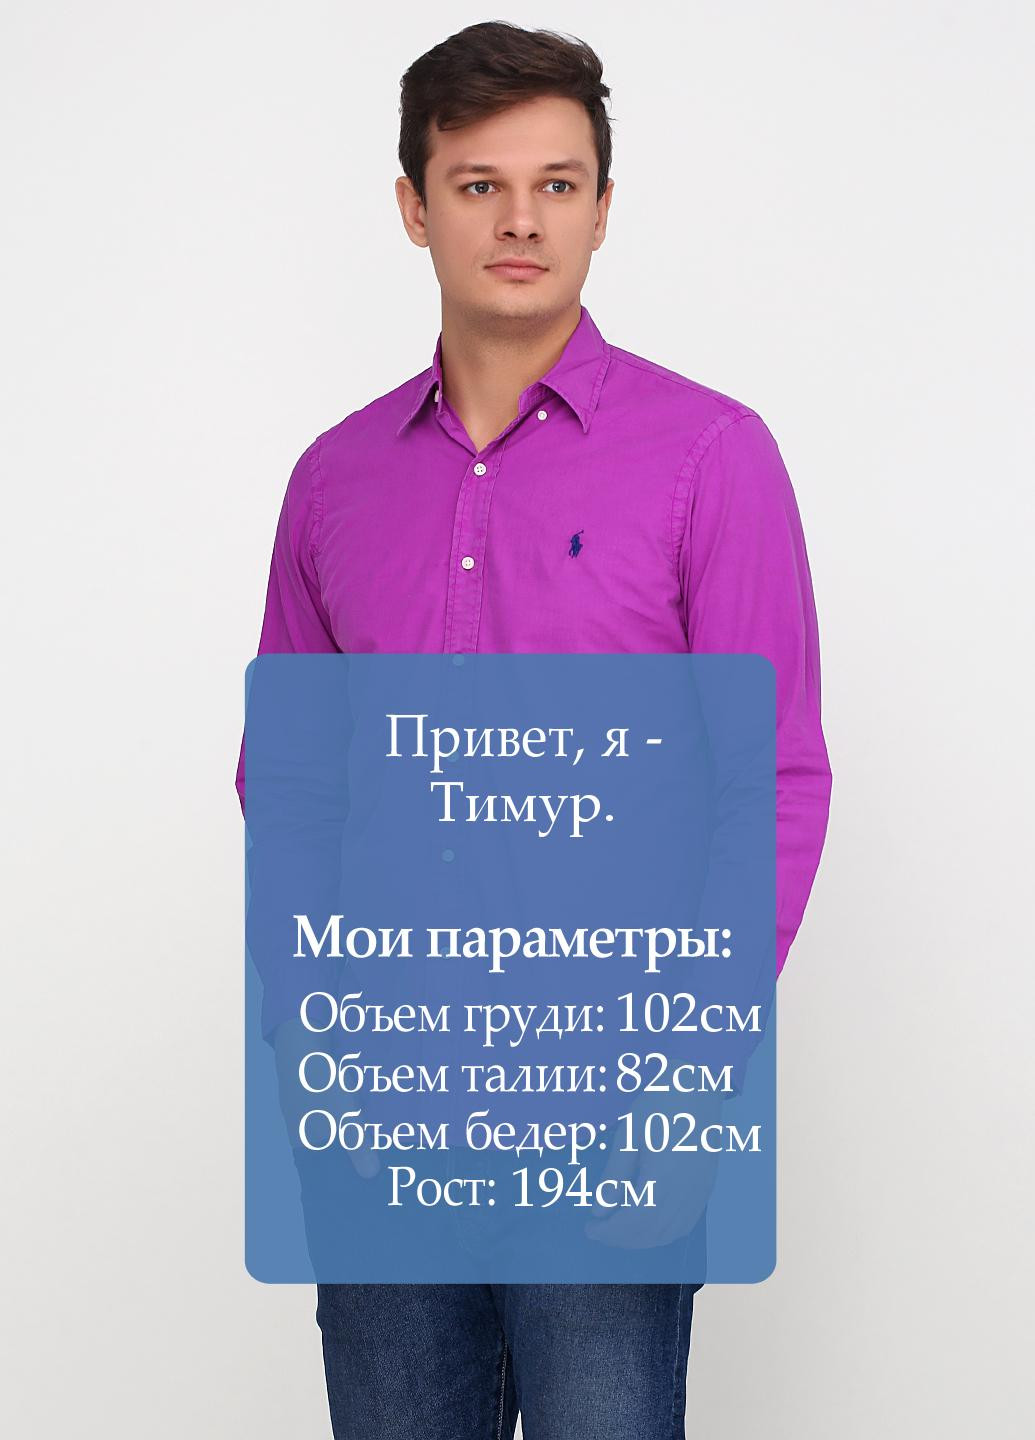 Фуксиновая (цвета Фуксия) кэжуал рубашка однотонная Ralph Lauren с длинным рукавом